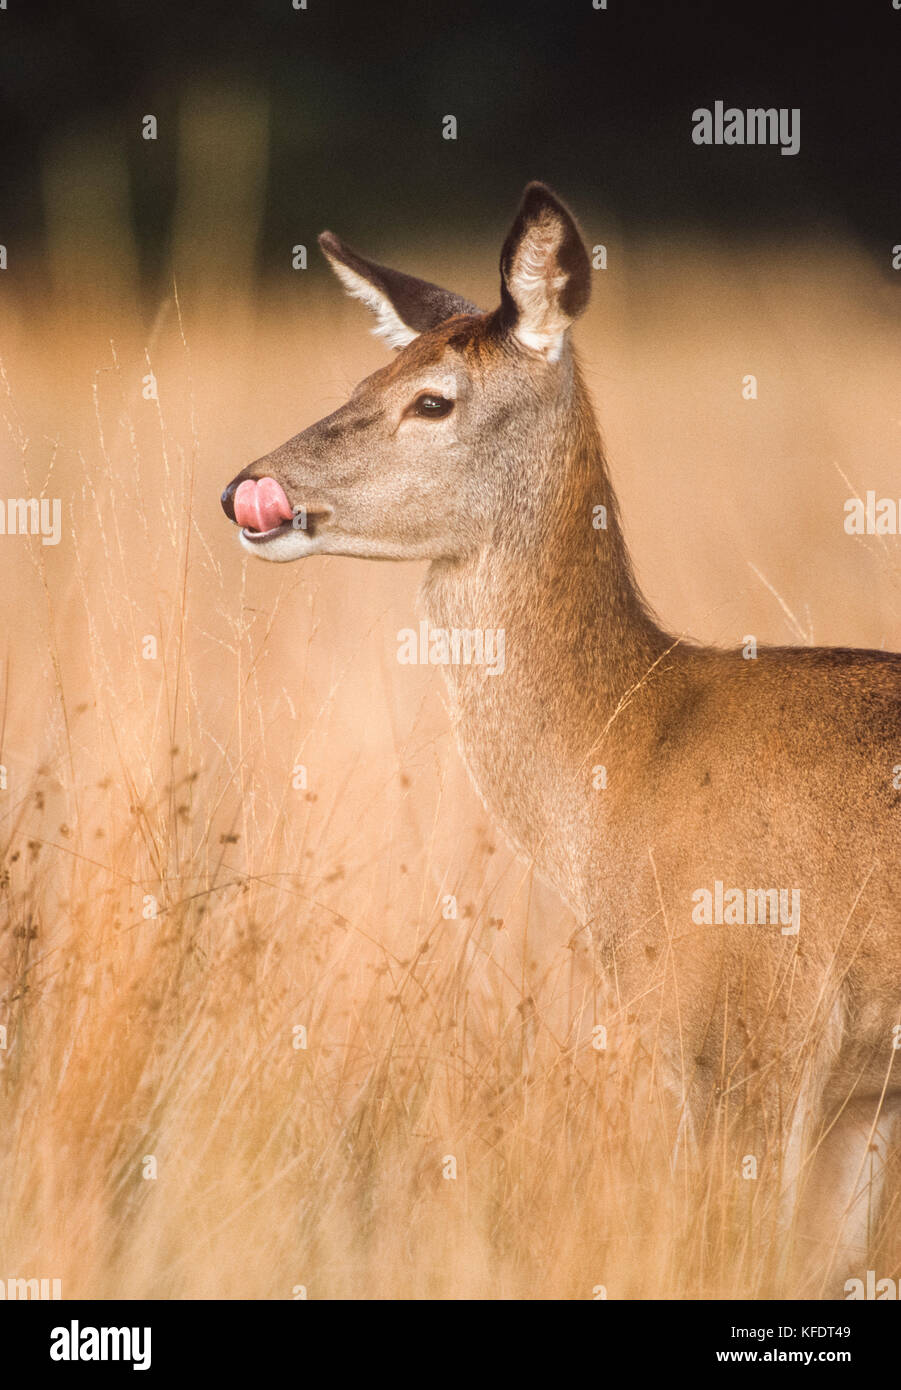 Femmina rosso cervo (Cervus elaphus), hind in piedi in erbe leccare il naso durante la stagione autunnale, Richmond Park, Londra, Regno Unito, Isole britanniche Foto Stock